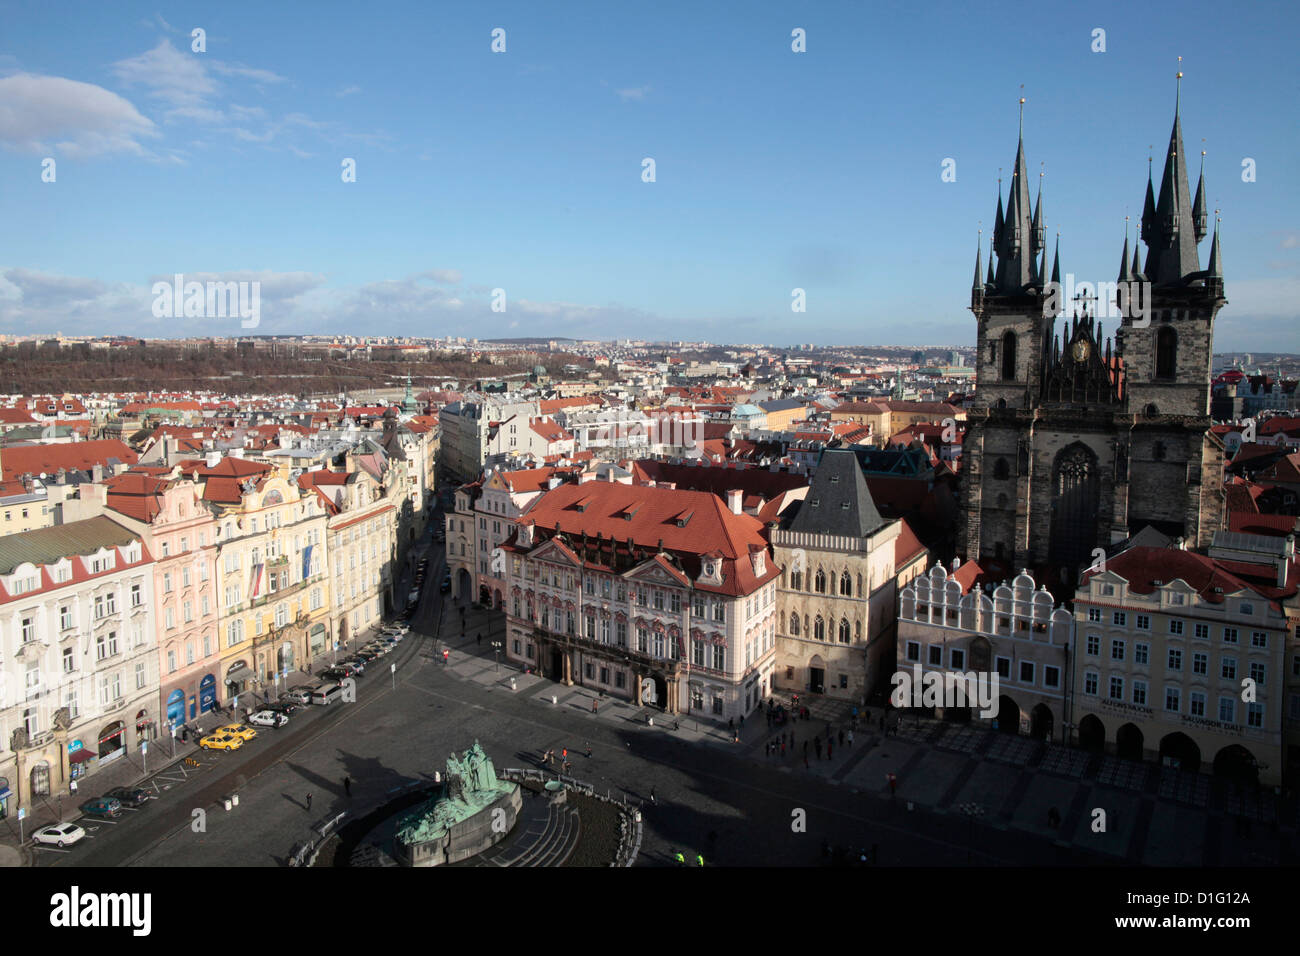 Plaza de la ciudad vieja y la iglesia de Tyn, Praga, República Checa, Europa Foto de stock